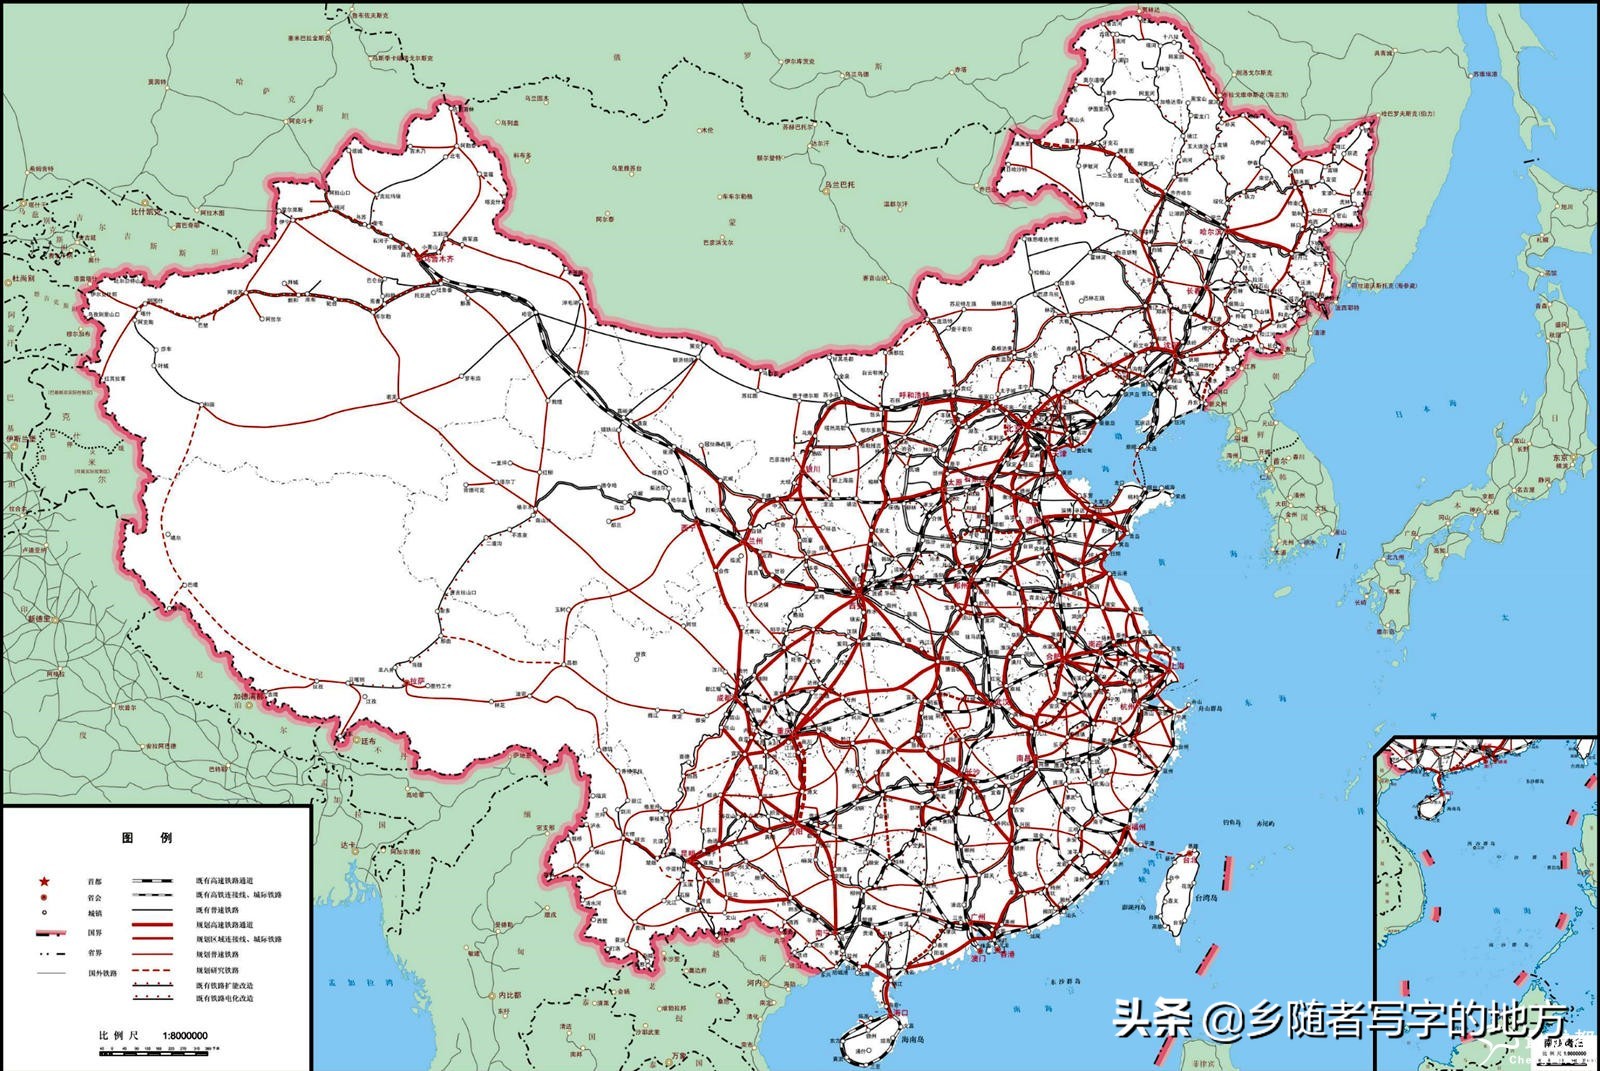 京沪高速改扩建工程沂南段实现双向八车道贯通